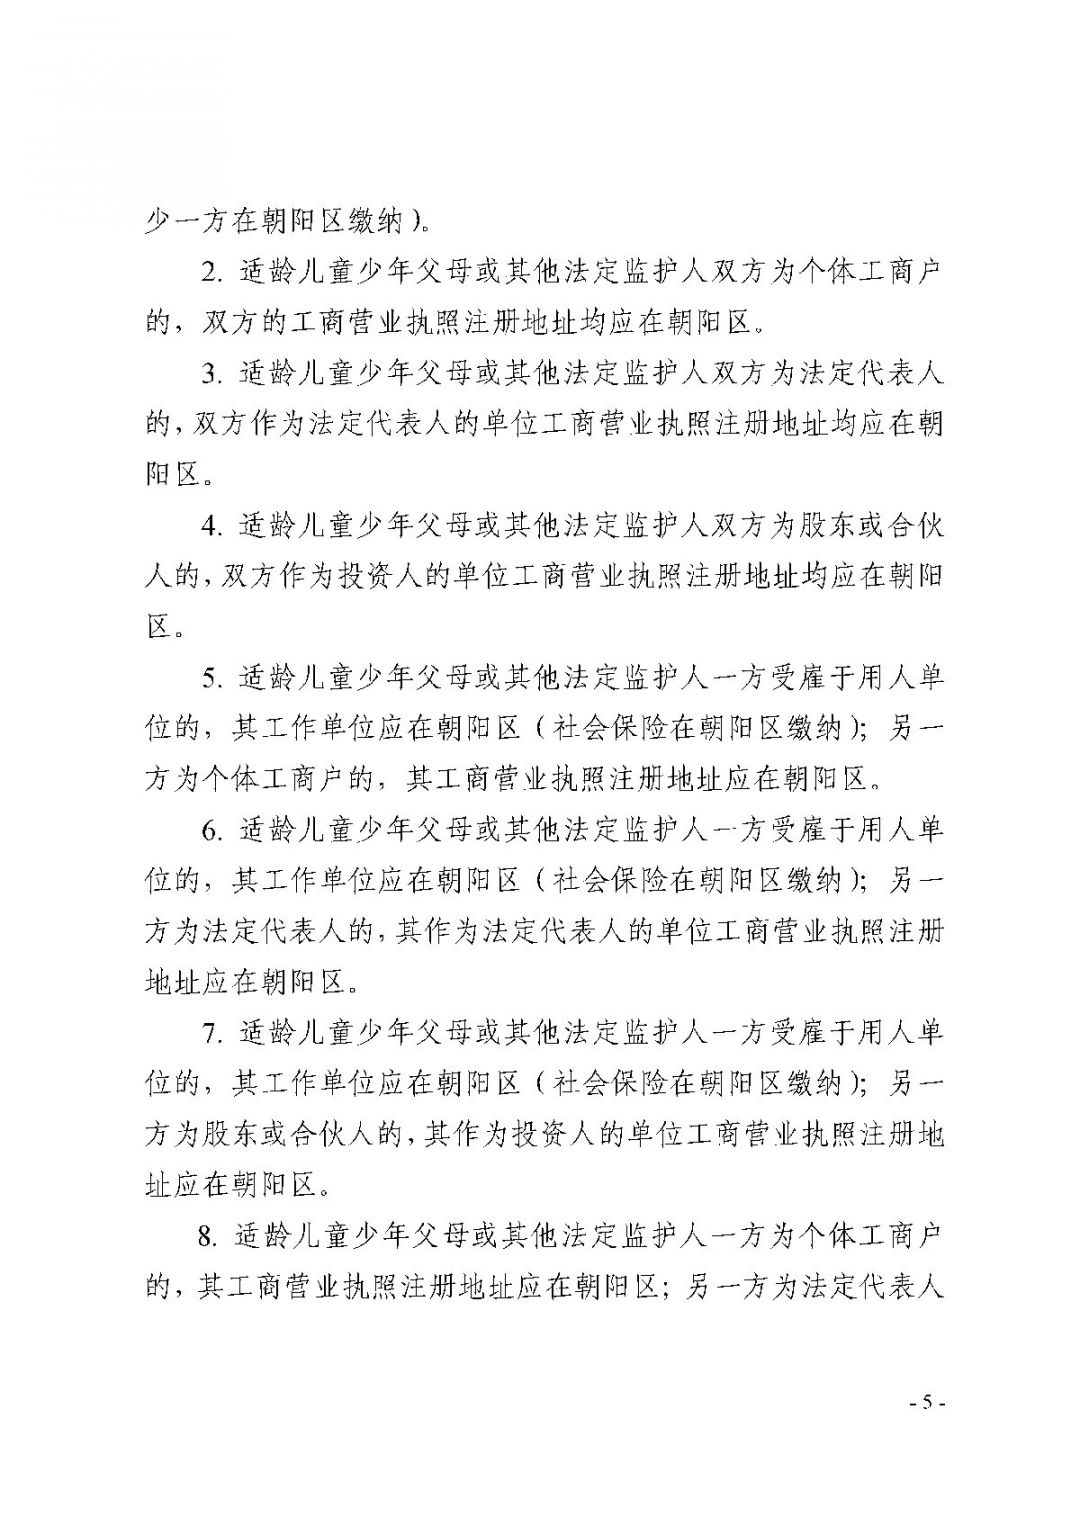 2021朝阳区非京籍适龄儿童少年入学证明证件材料审核实施细则